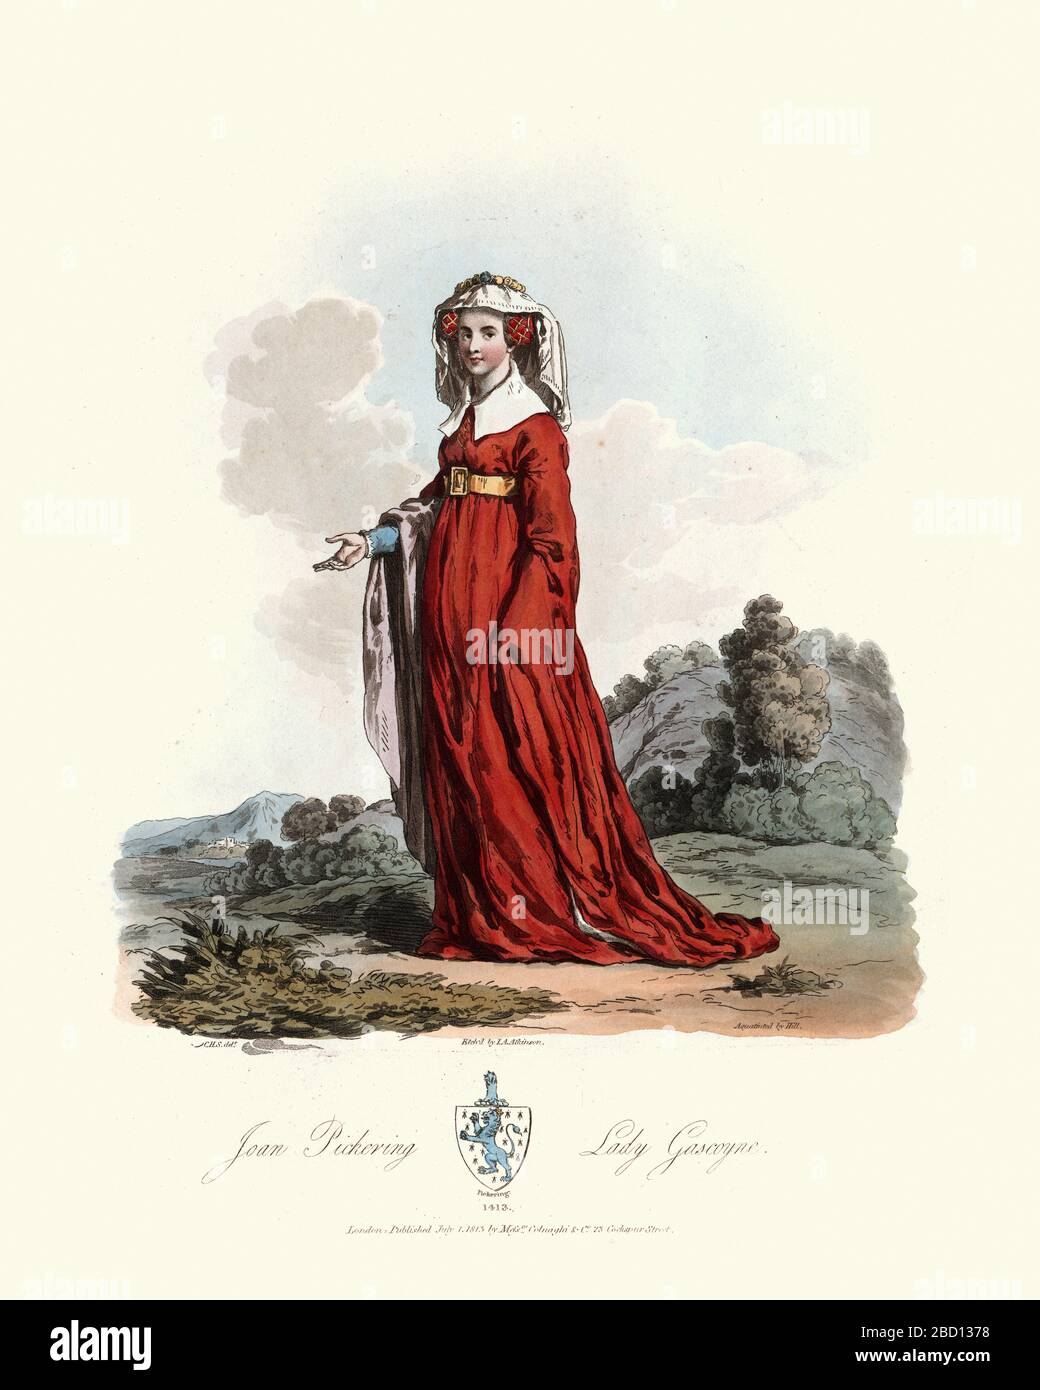 Mittelaltermode, junge Mittelalterfrau, die ein langes rotes Kleid trägt. Joan de Pickering, Lady Gascoigne, 15. Jahrhundert. Frau von Sir William Gascoigne. Stockfoto